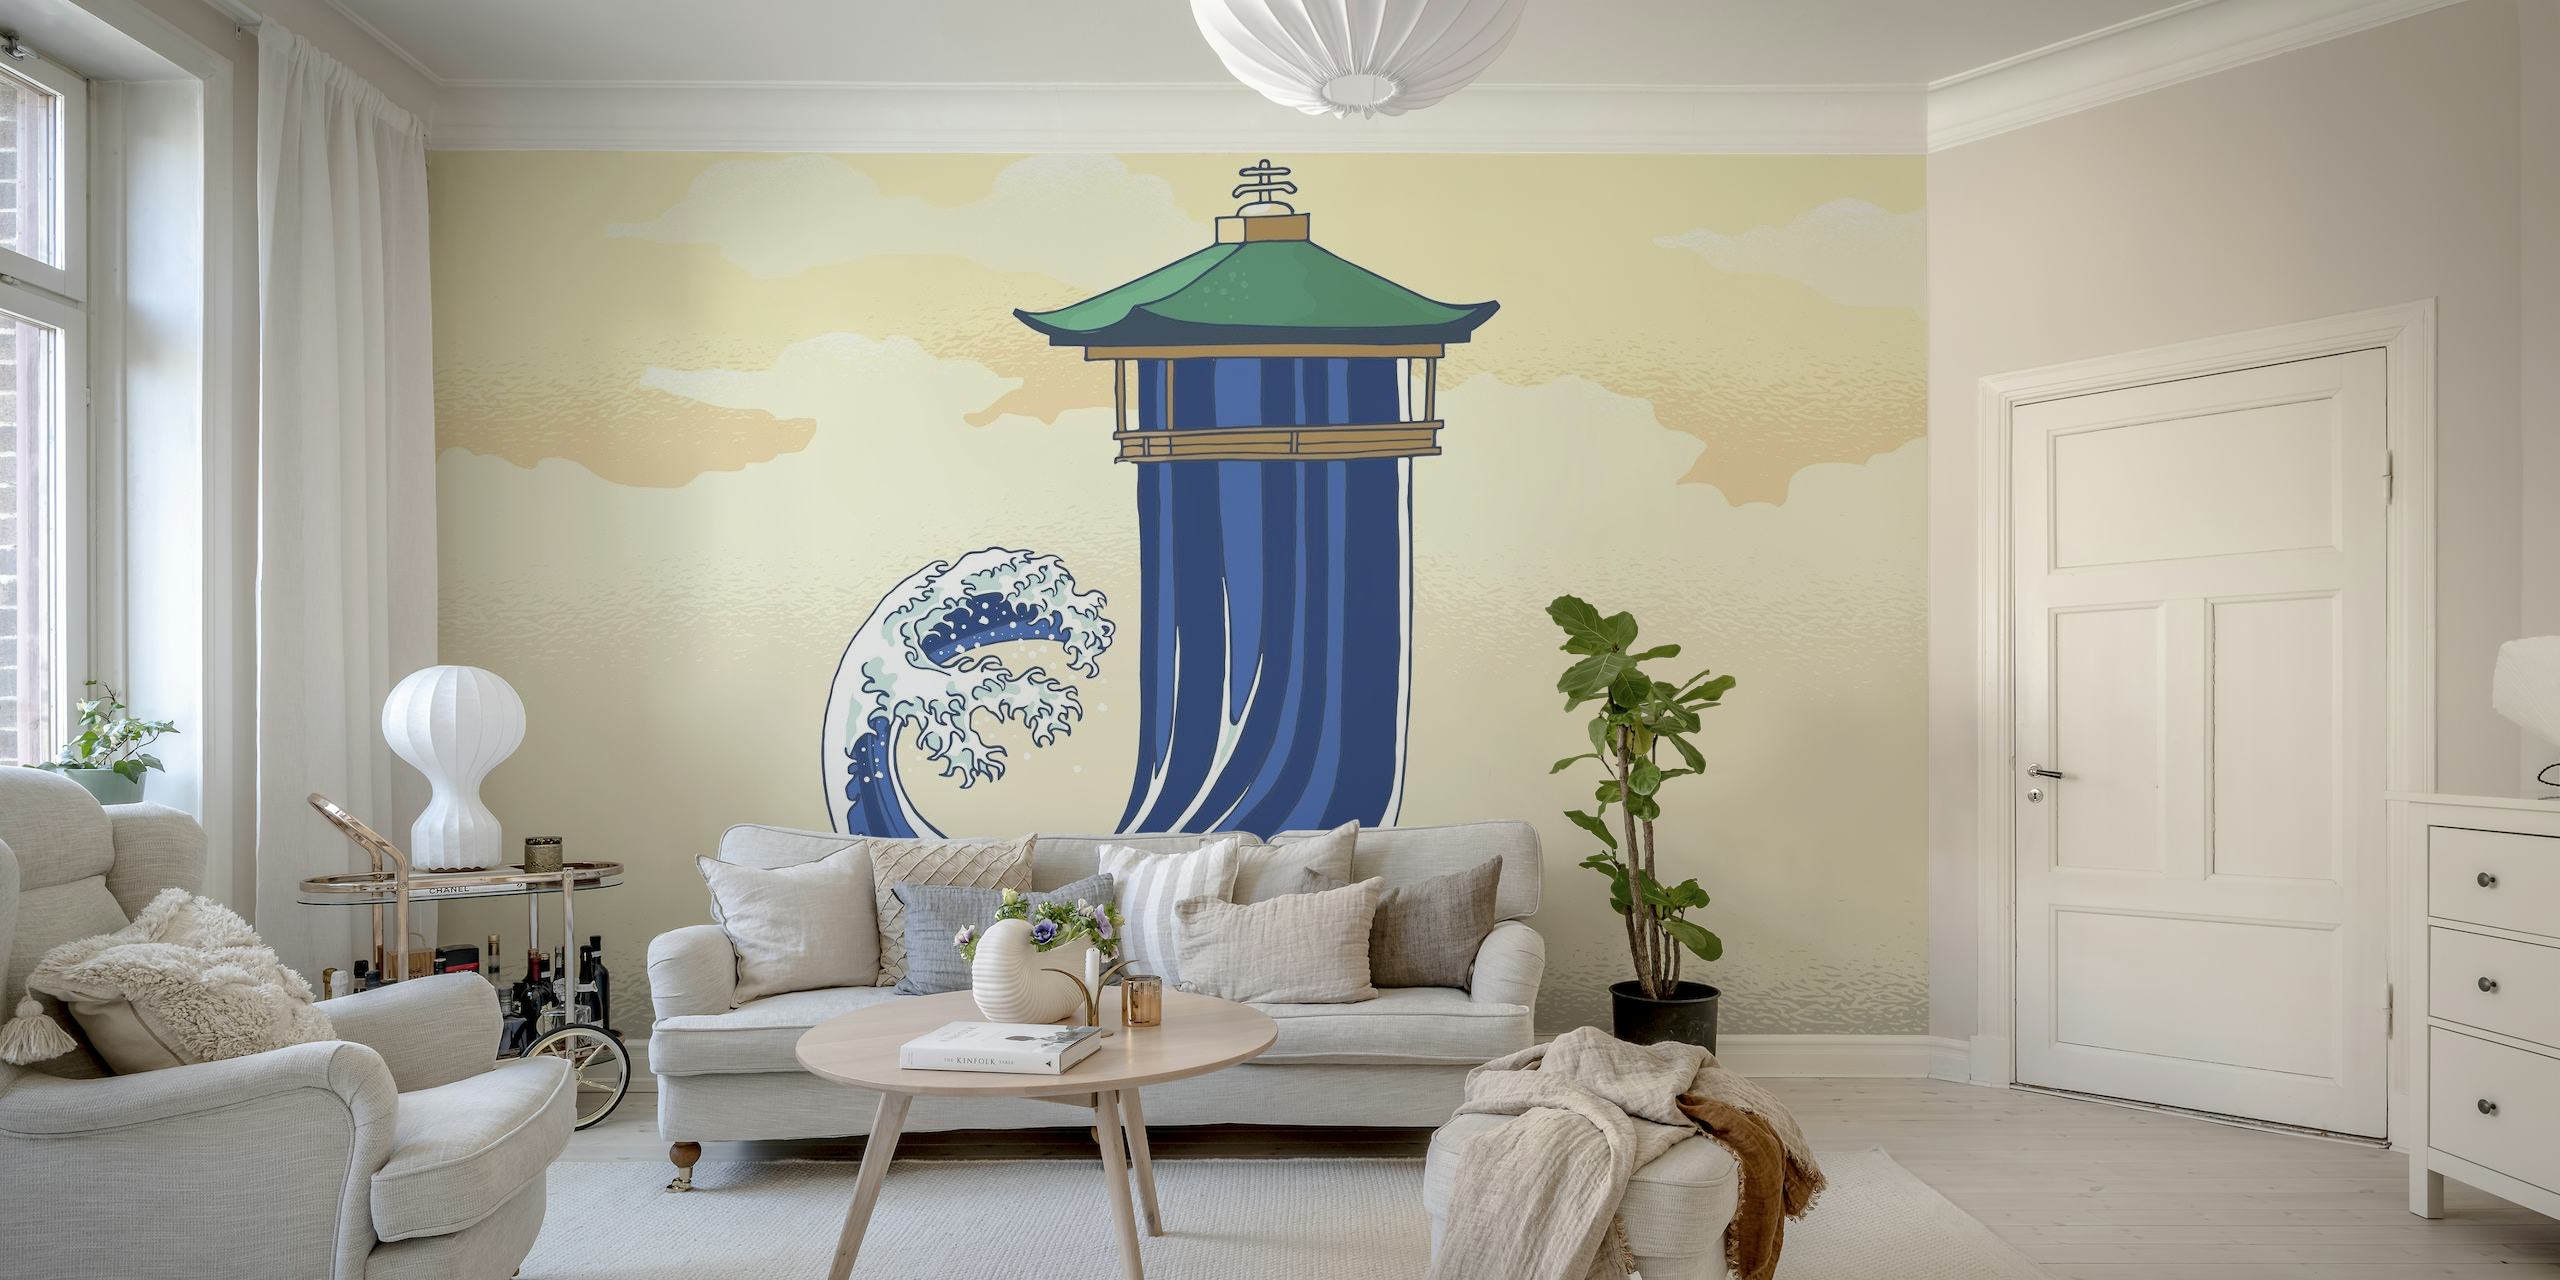 Pagode japonês estilizado e mural de ondas oceânicas em tons pastel